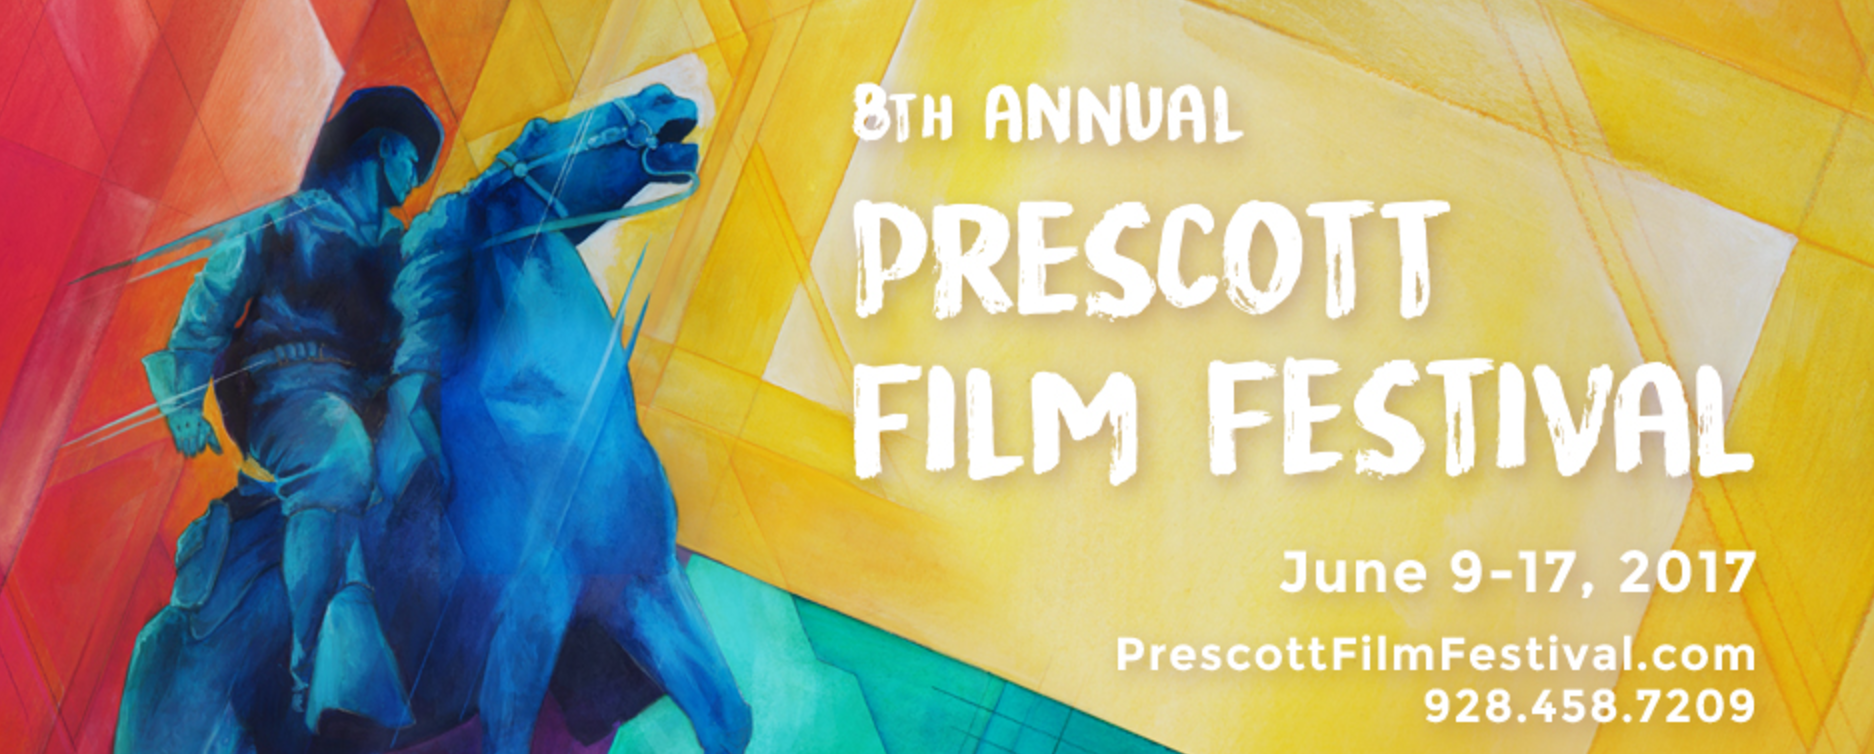 Prescott Film Festival Olsen's For Healthy Animals